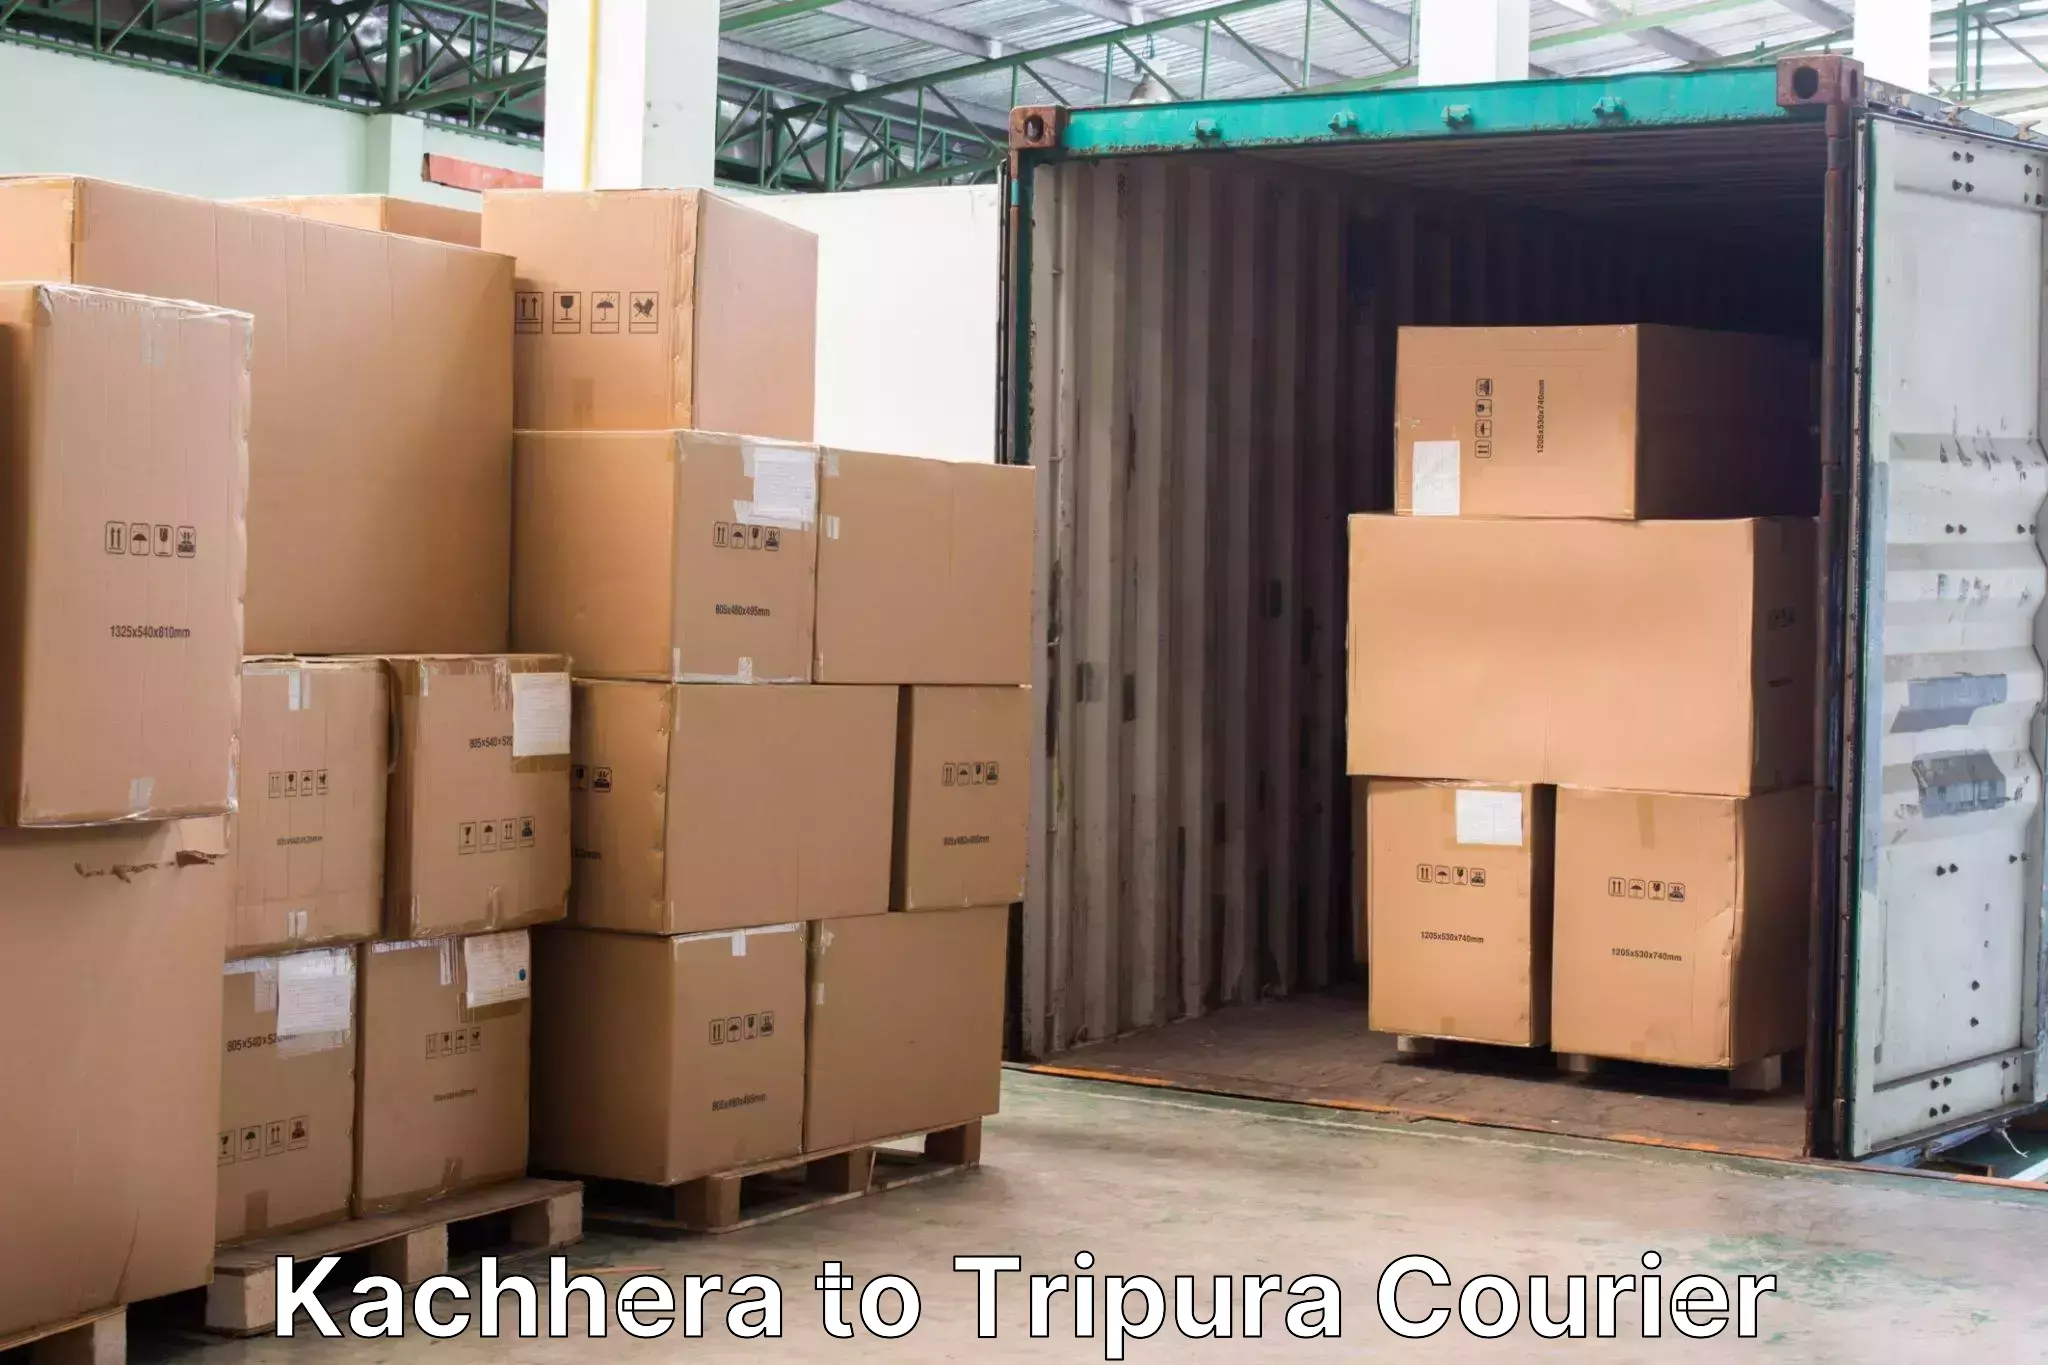 Express luggage delivery Kachhera to Agartala